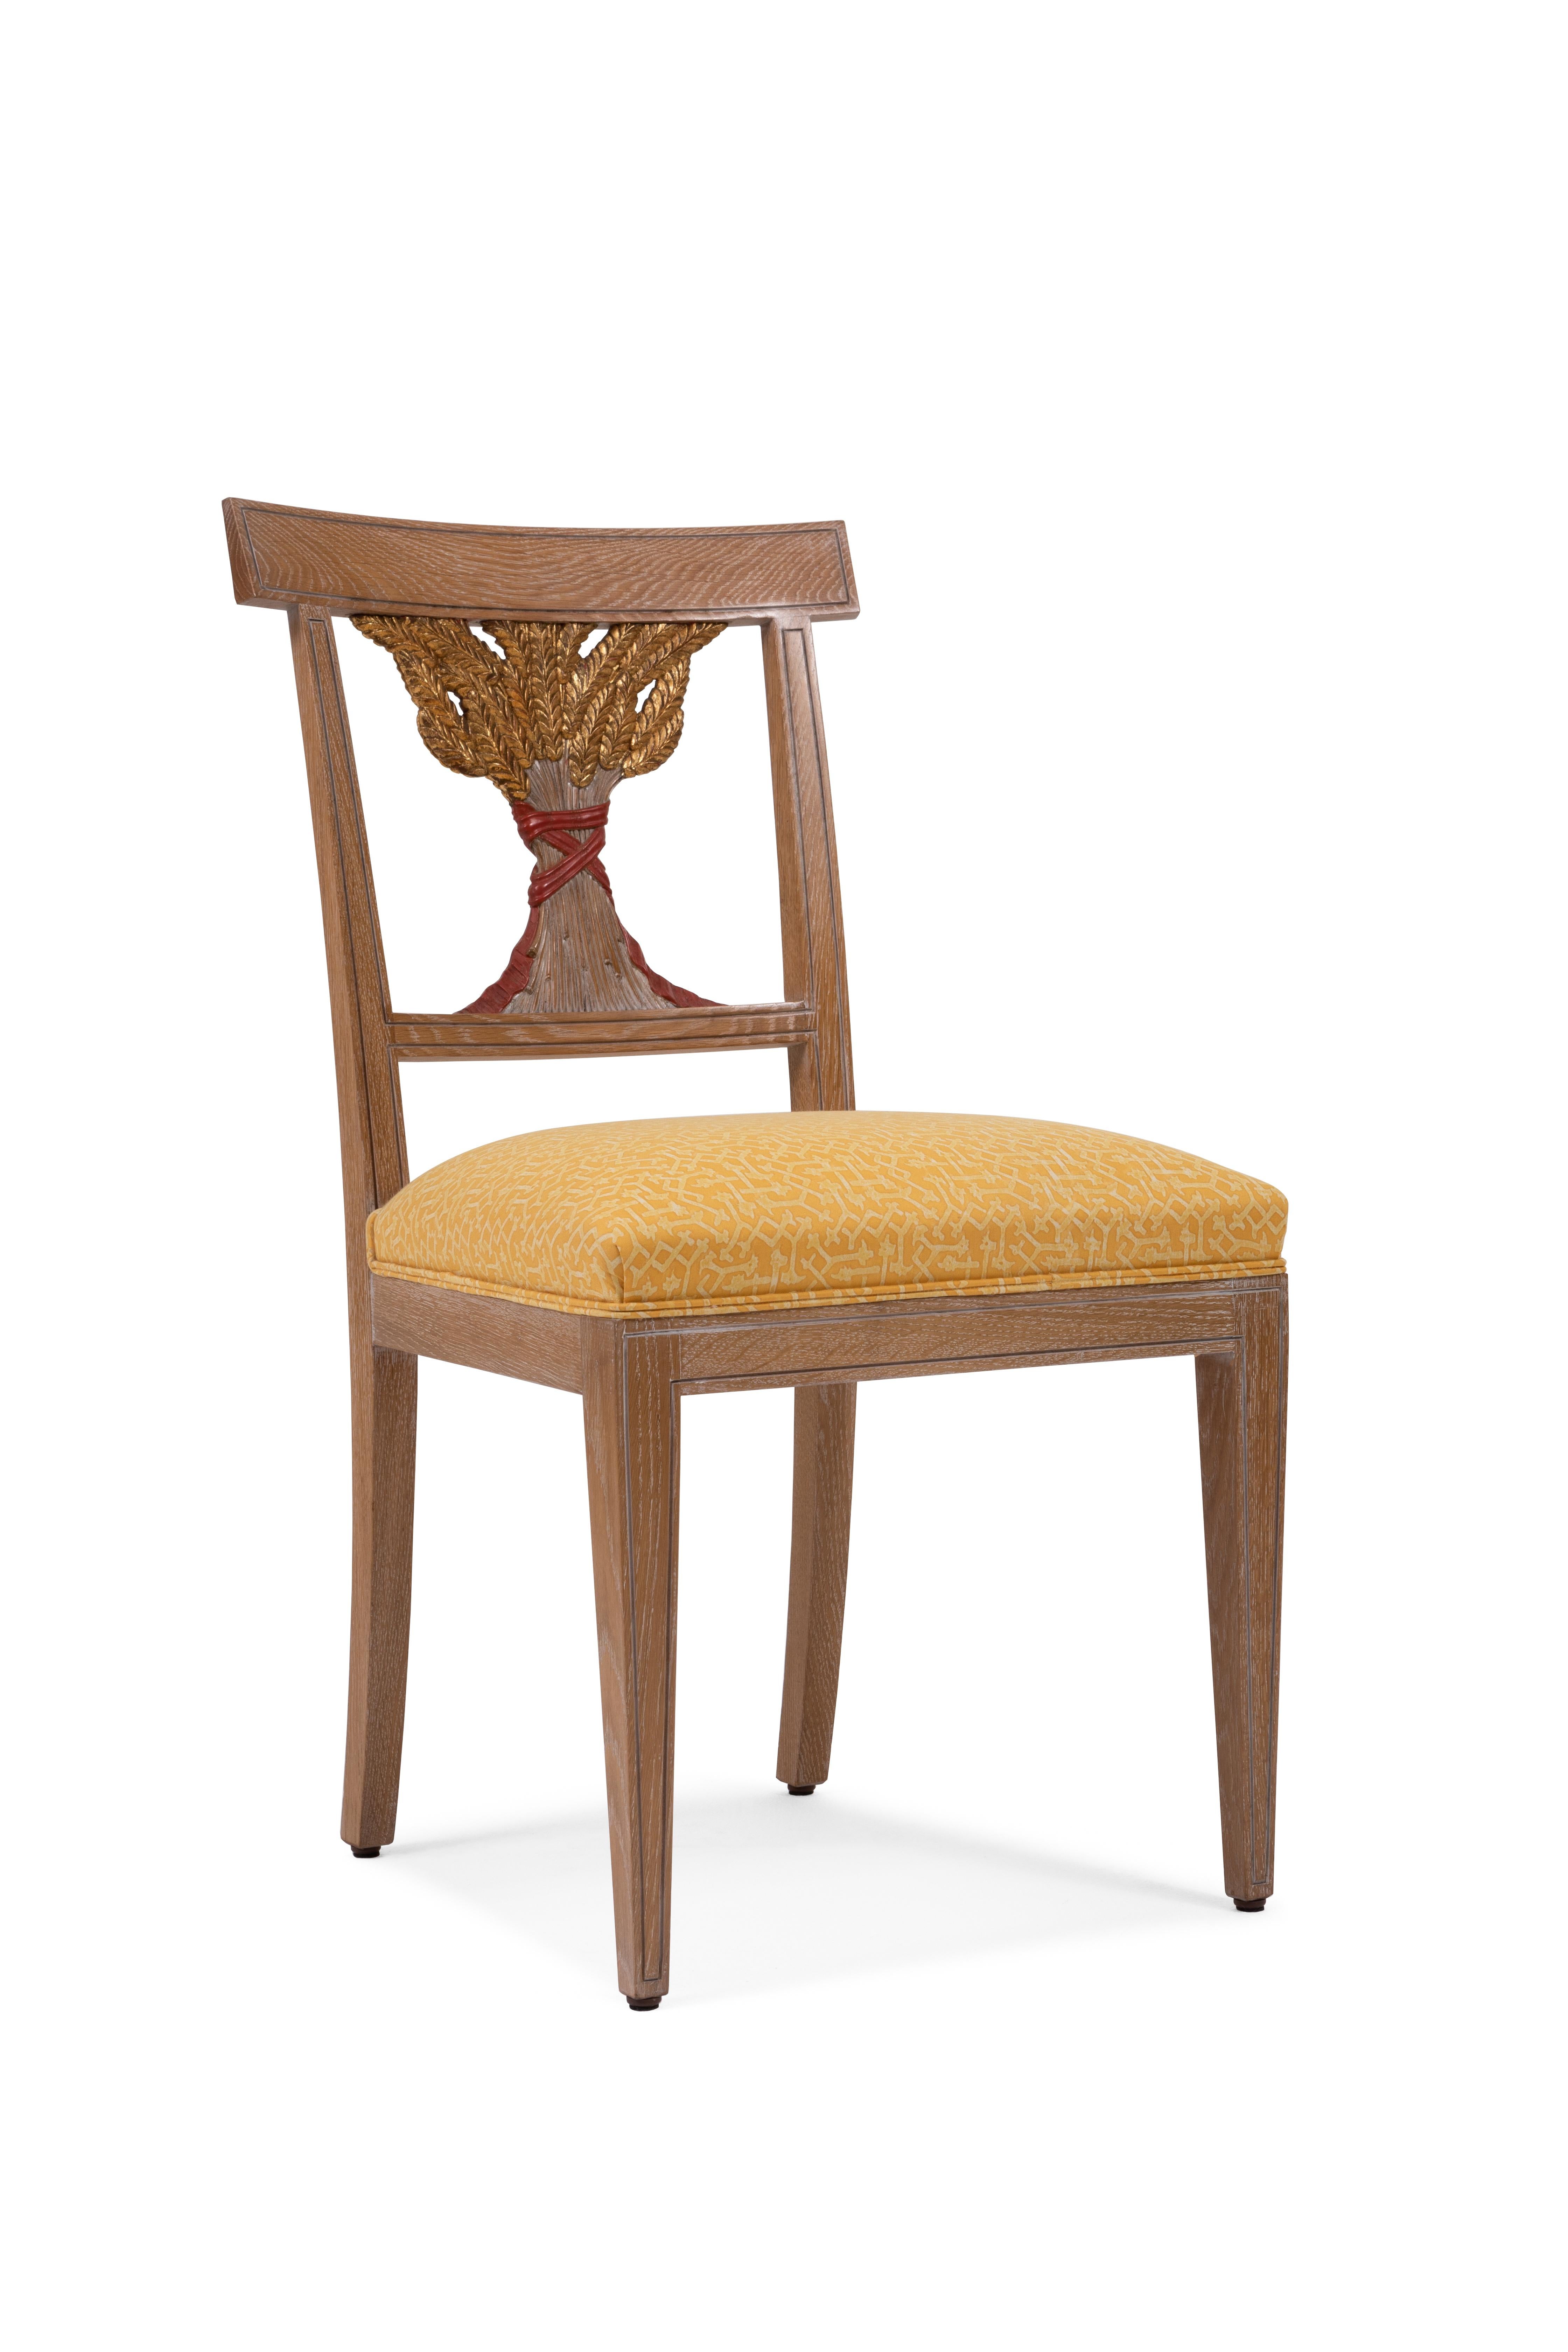 Stuhl aus Eichenholz, mit handgeschnitzten dekorativen Ähren auf der Rückenlehne und der Gegenlehne. Dieser Sessel ist vom russischen Empire-Stil ( zar Nicola II ) inspiriert.
Perfekt für das Esszimmer, es ist anpassbar. Die dekorativen Ähren sind